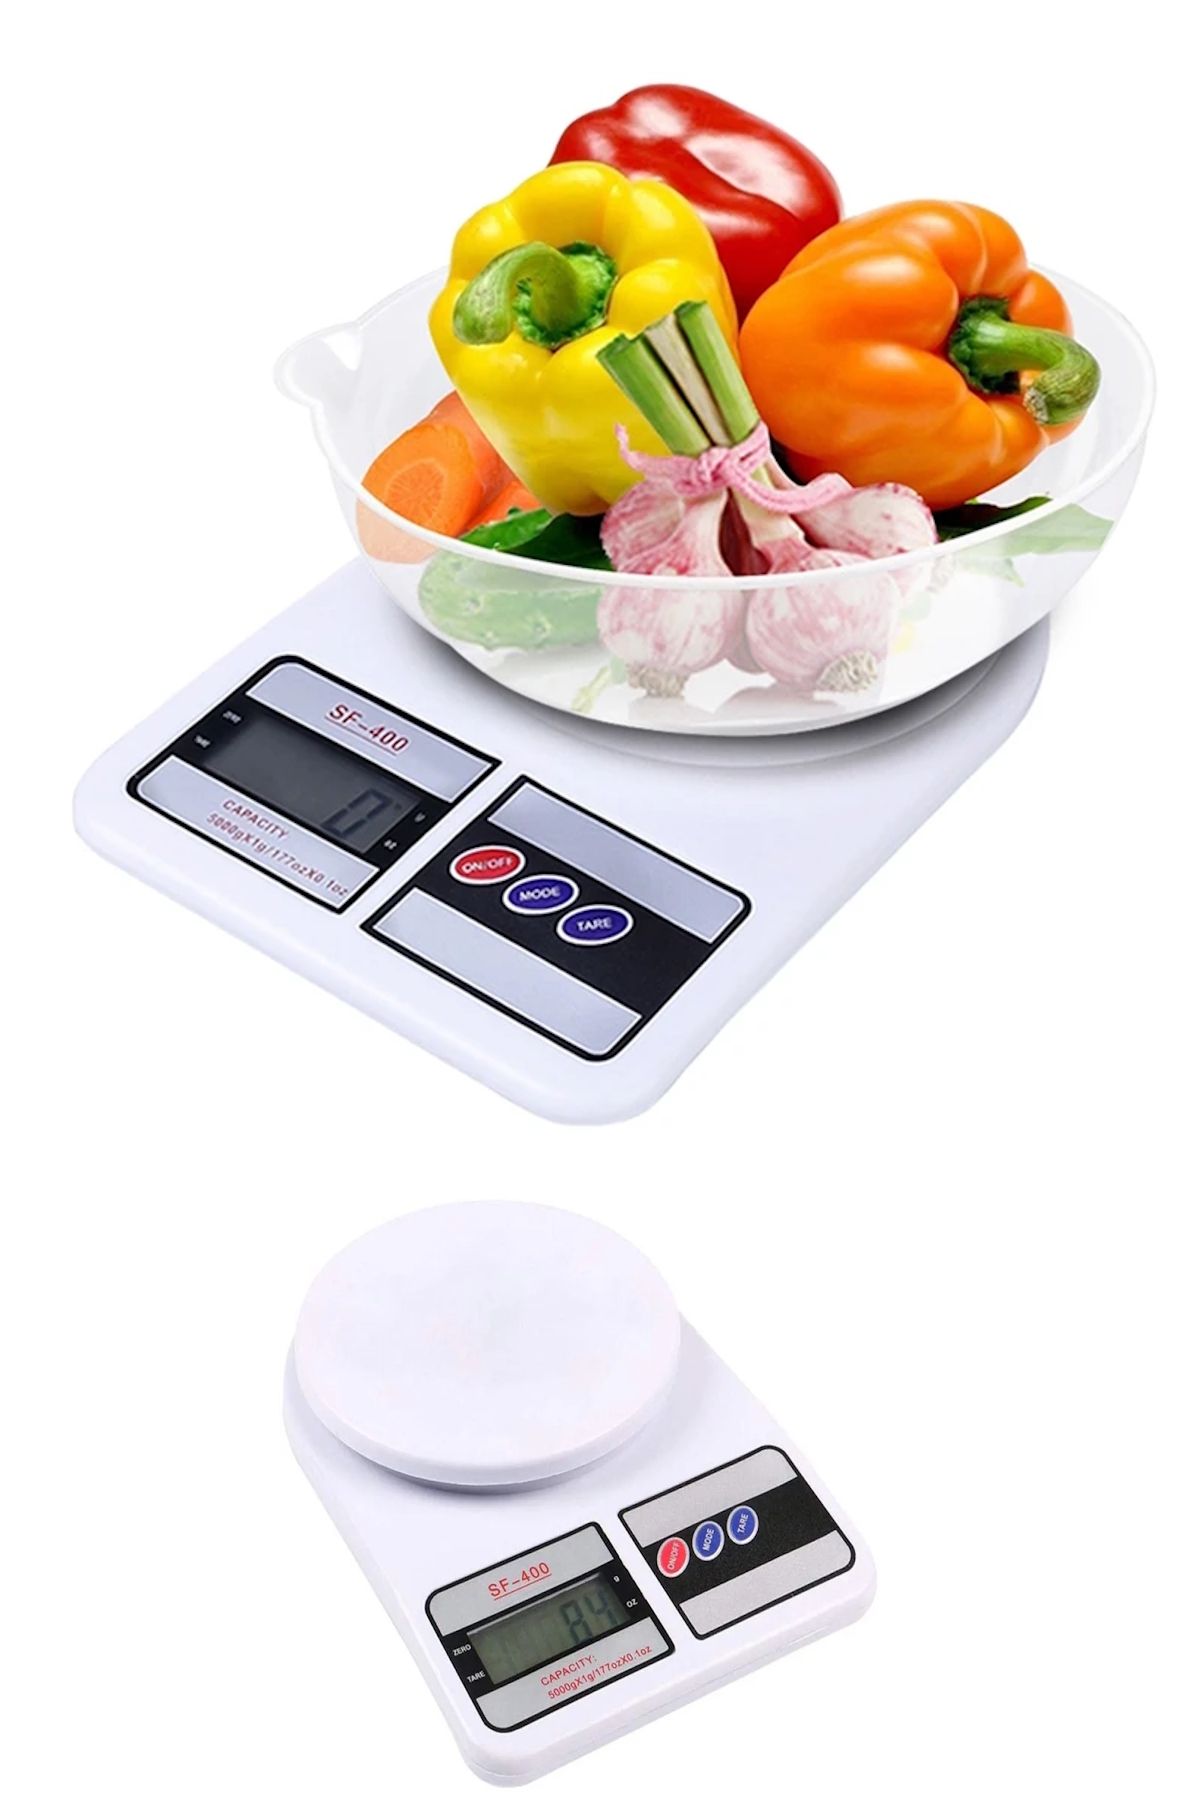 FırsatVar Dijital Hassas Mutfak Tartısı Lcd Ekranlı Mutfak Terazisi Pilli Un Şeker Meyve Tartısı Max:10kg